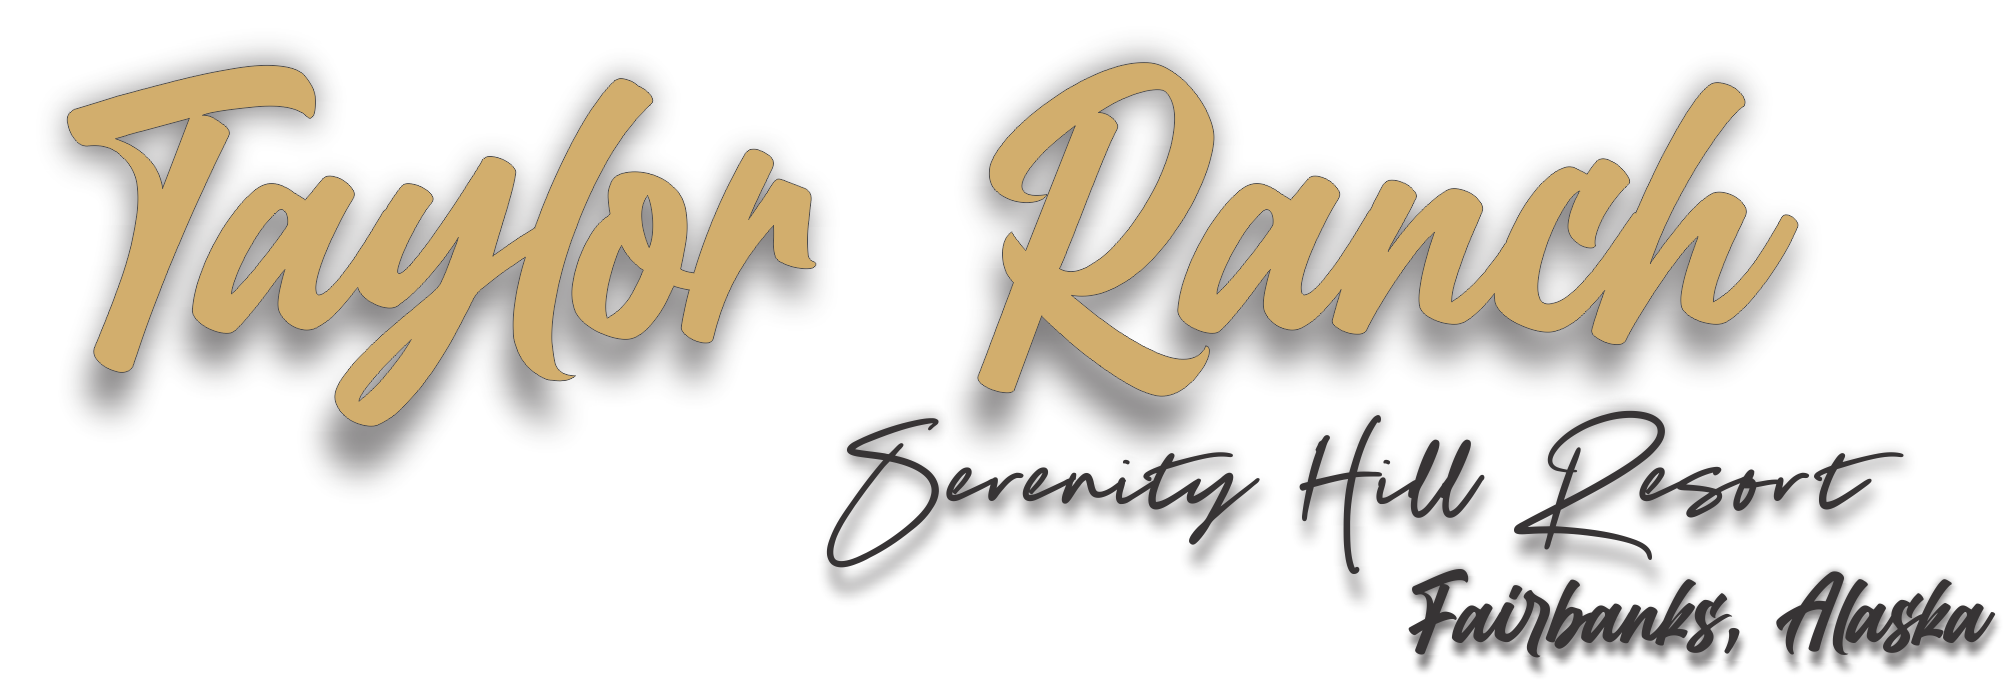 Taylor Ranch logo v2 Alaska